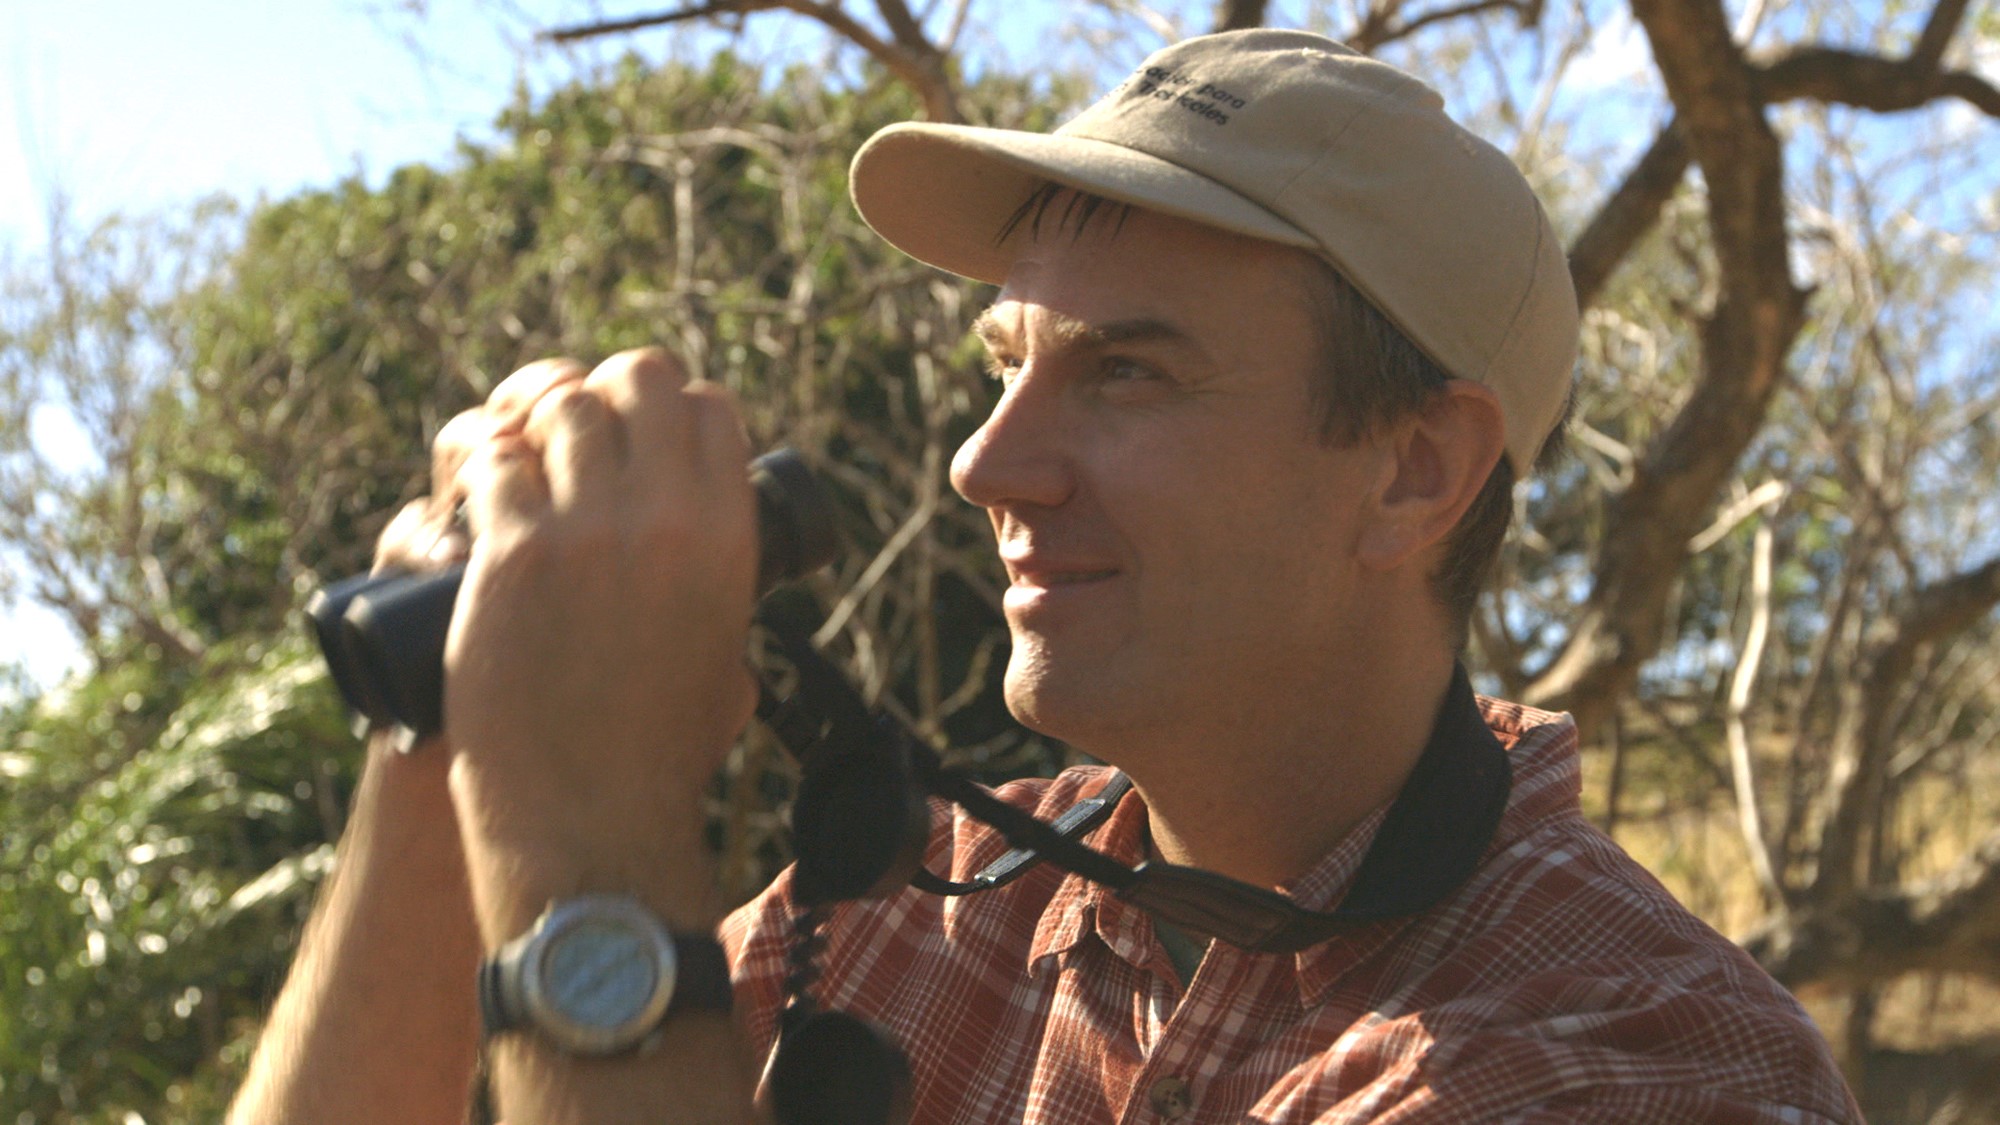 Dr. Tim Wright looking through binoculars